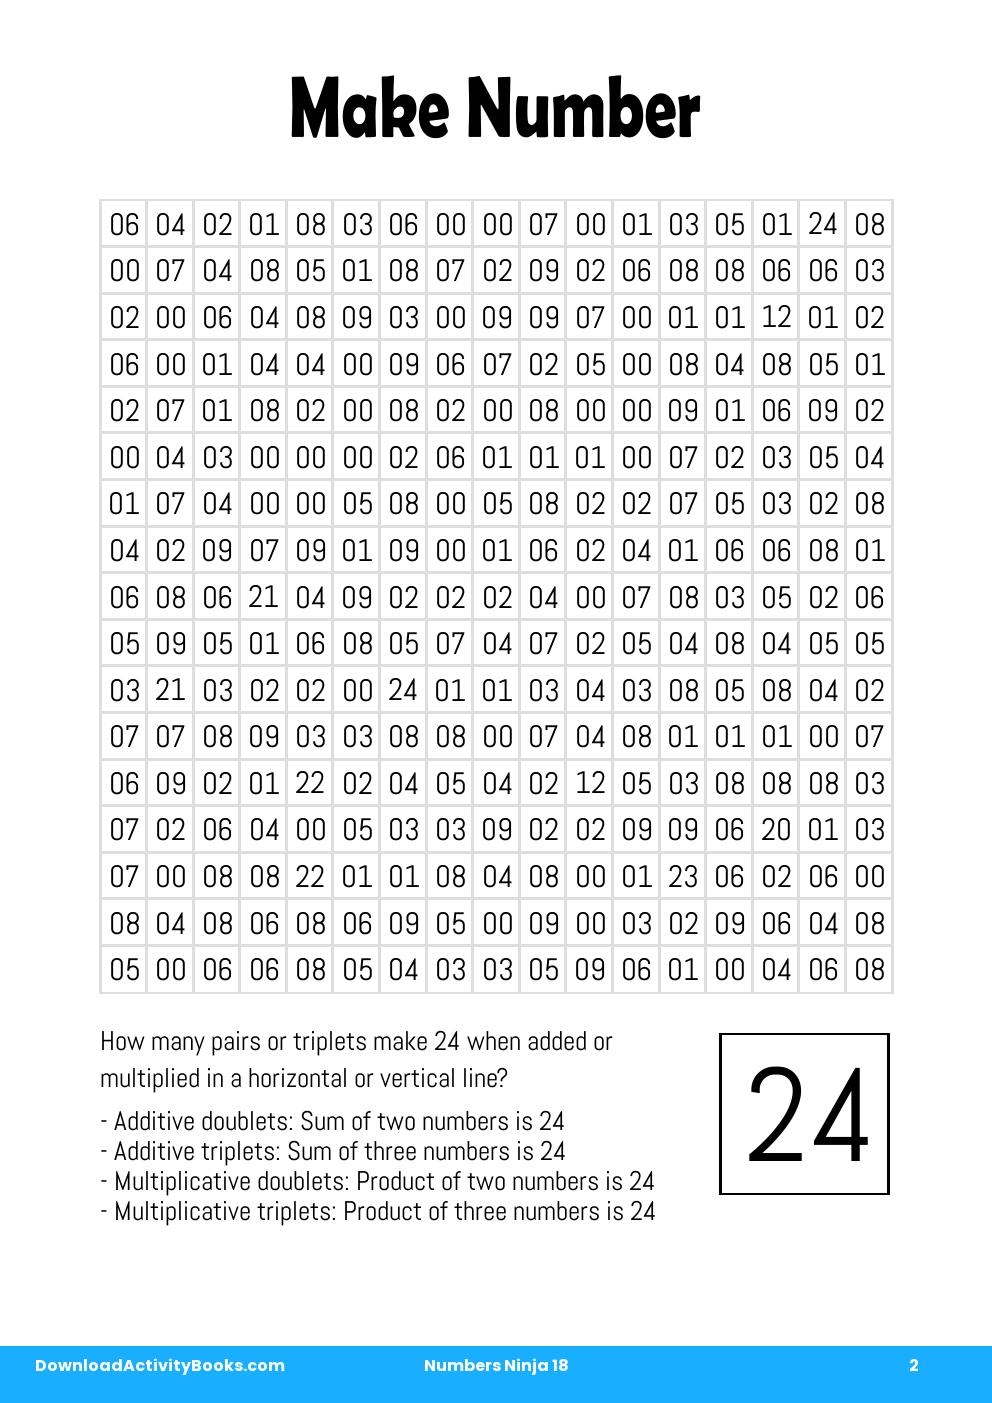 Make Number in Numbers Ninja 18